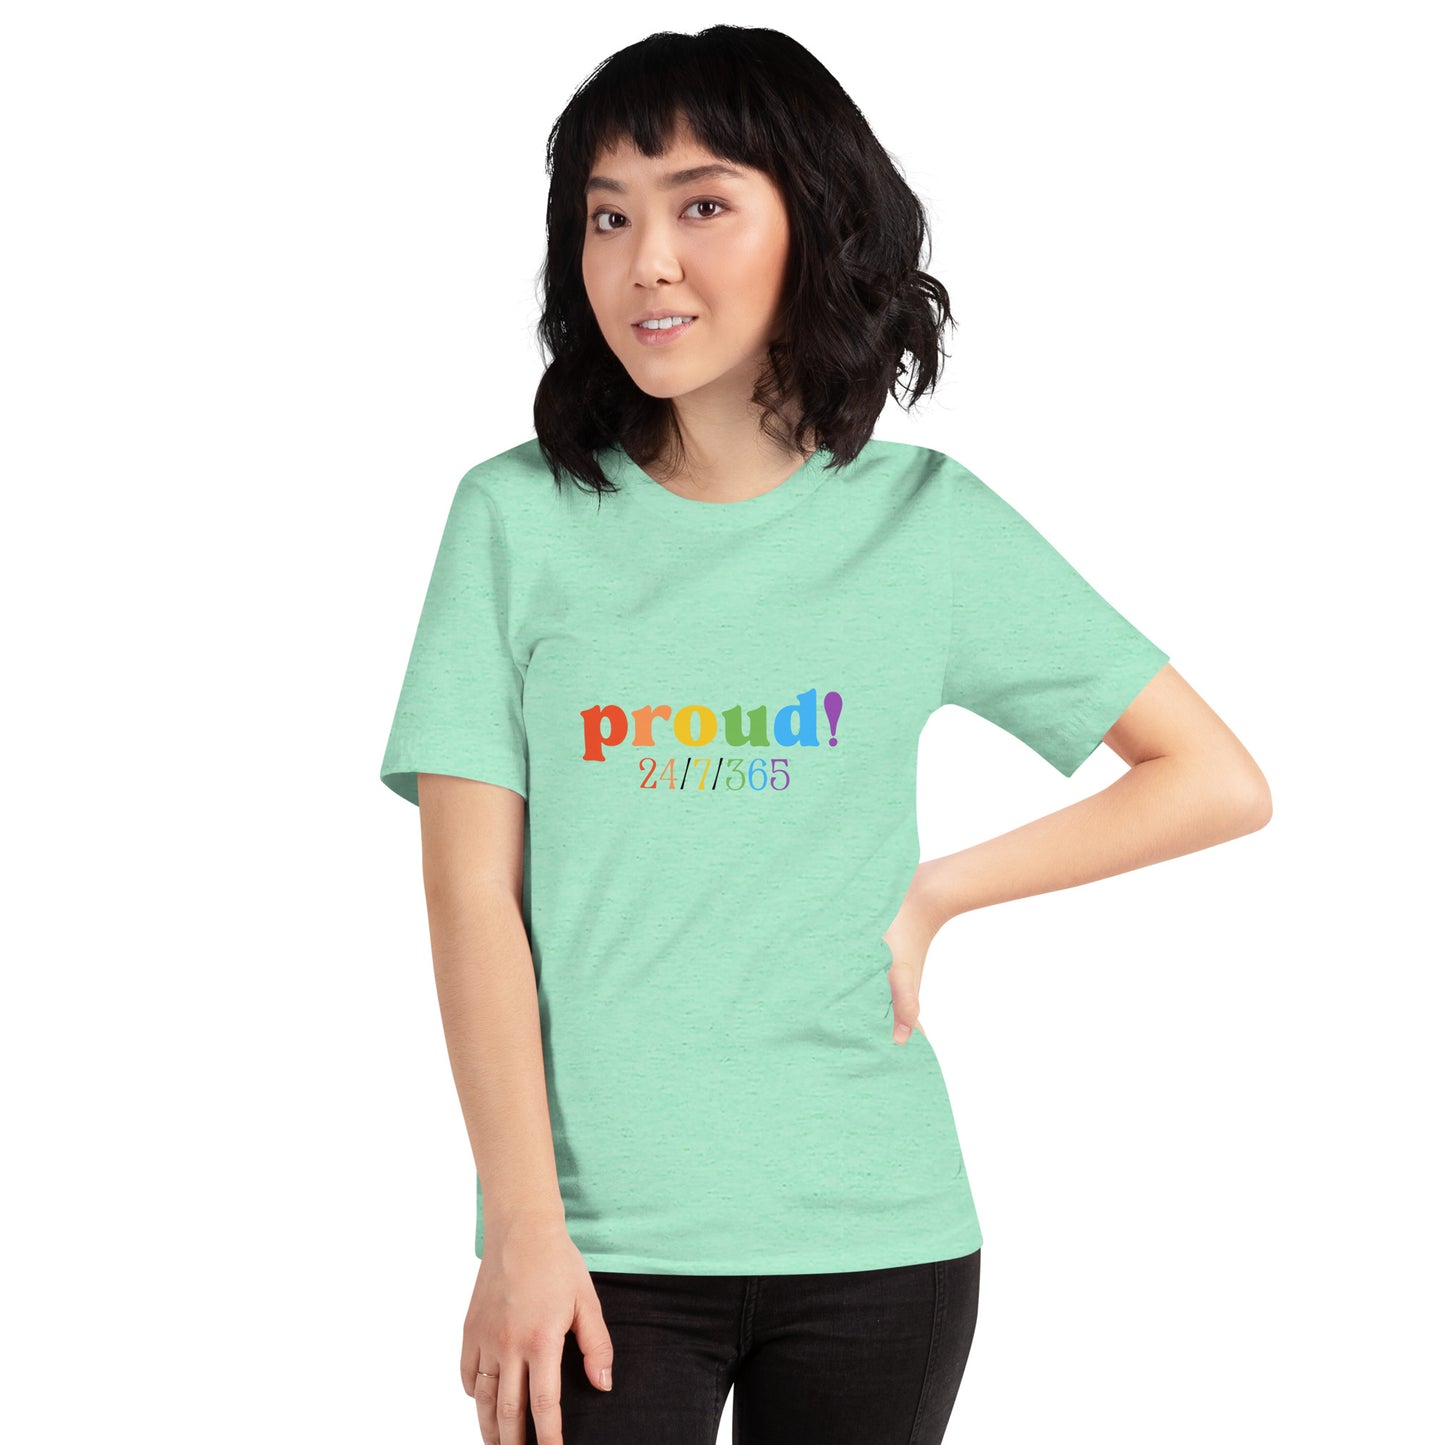 Proud 24/7/365 - Unisex t-shirt